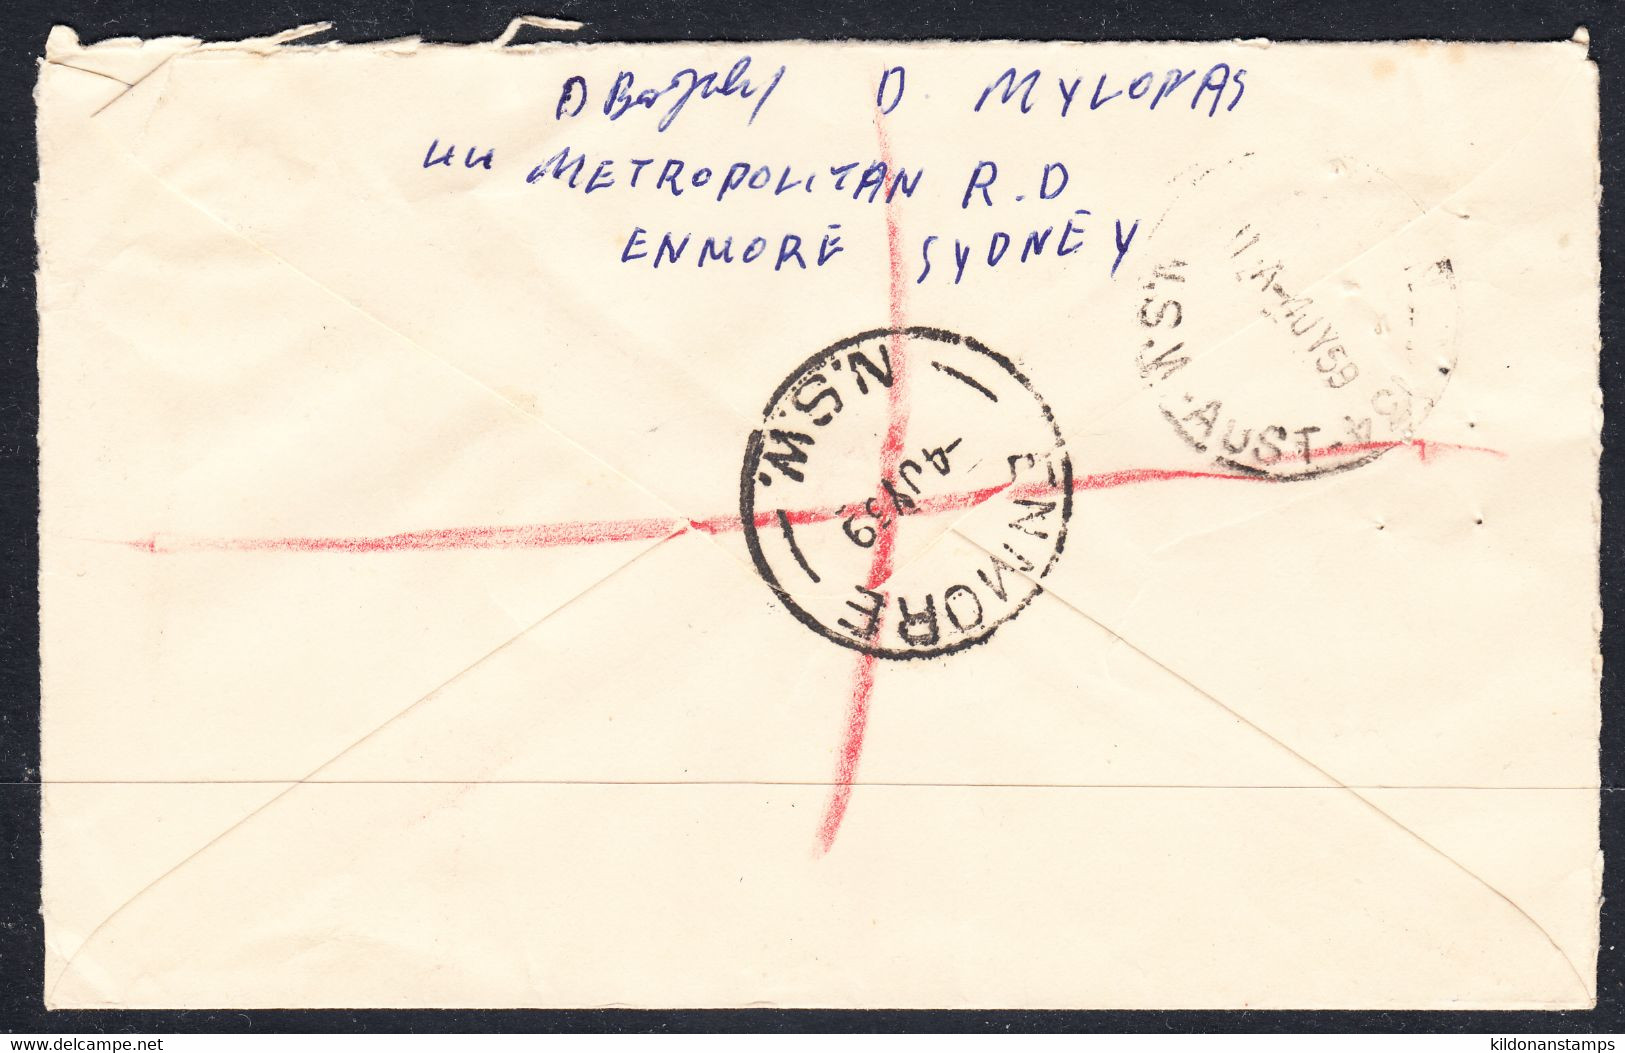 Australia Registered, Postmark Jul 4,1959 - Covers & Documents